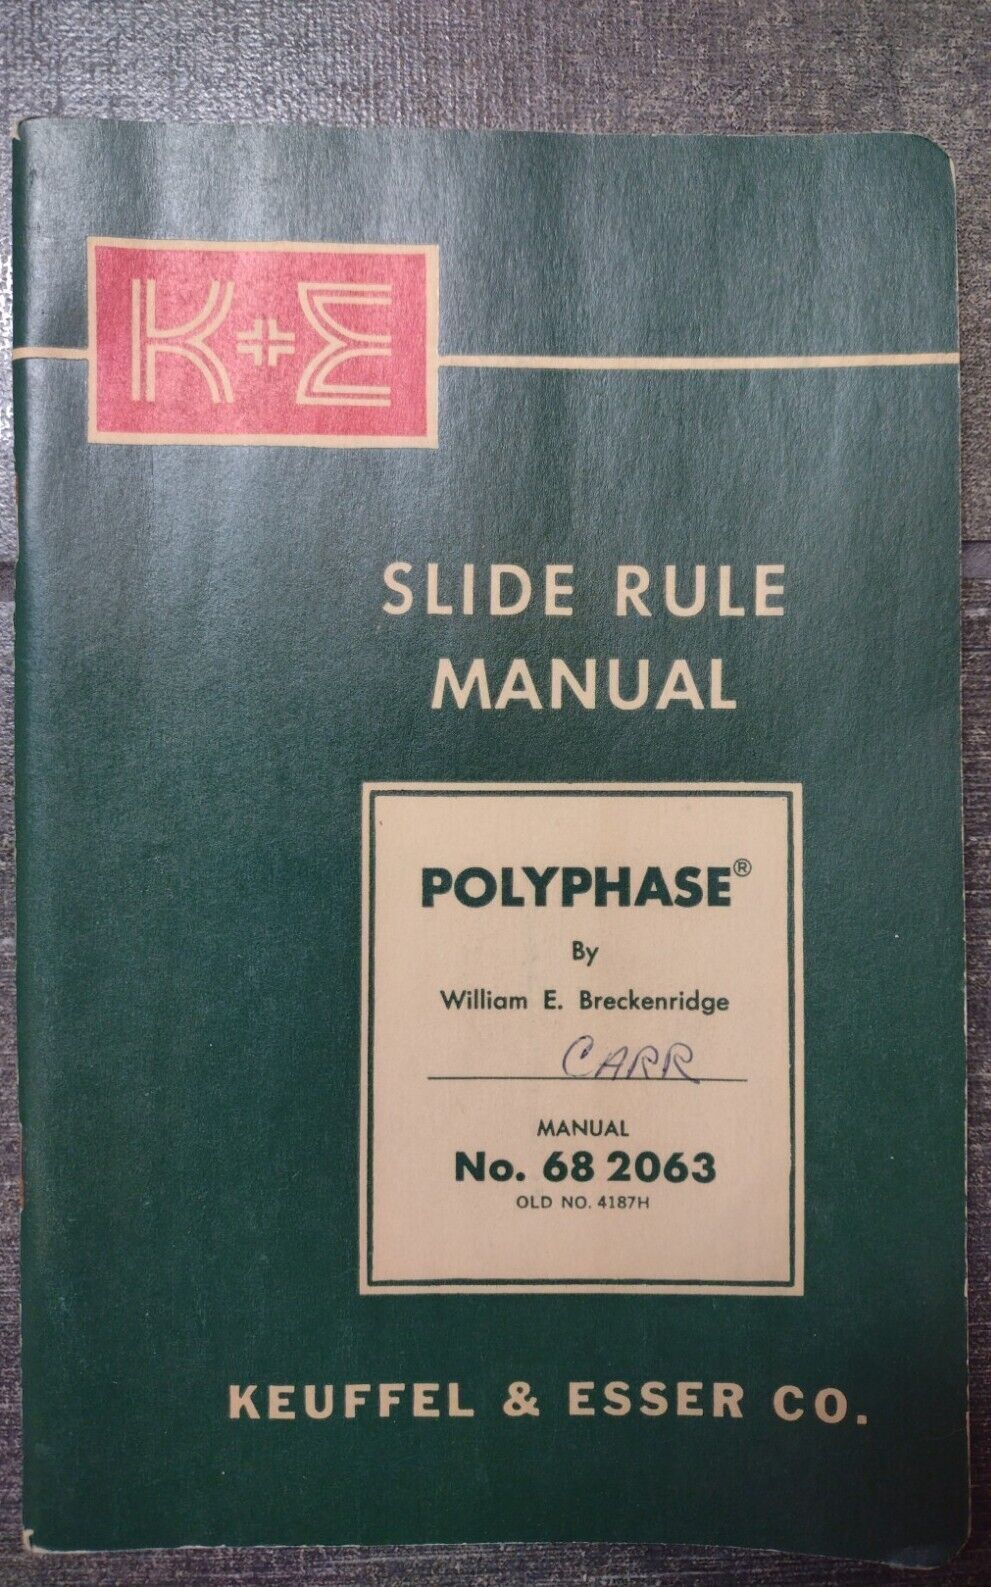 VTG K&E Slide Rule Manual 1962 & POST Instructions For Slide Rules 1945